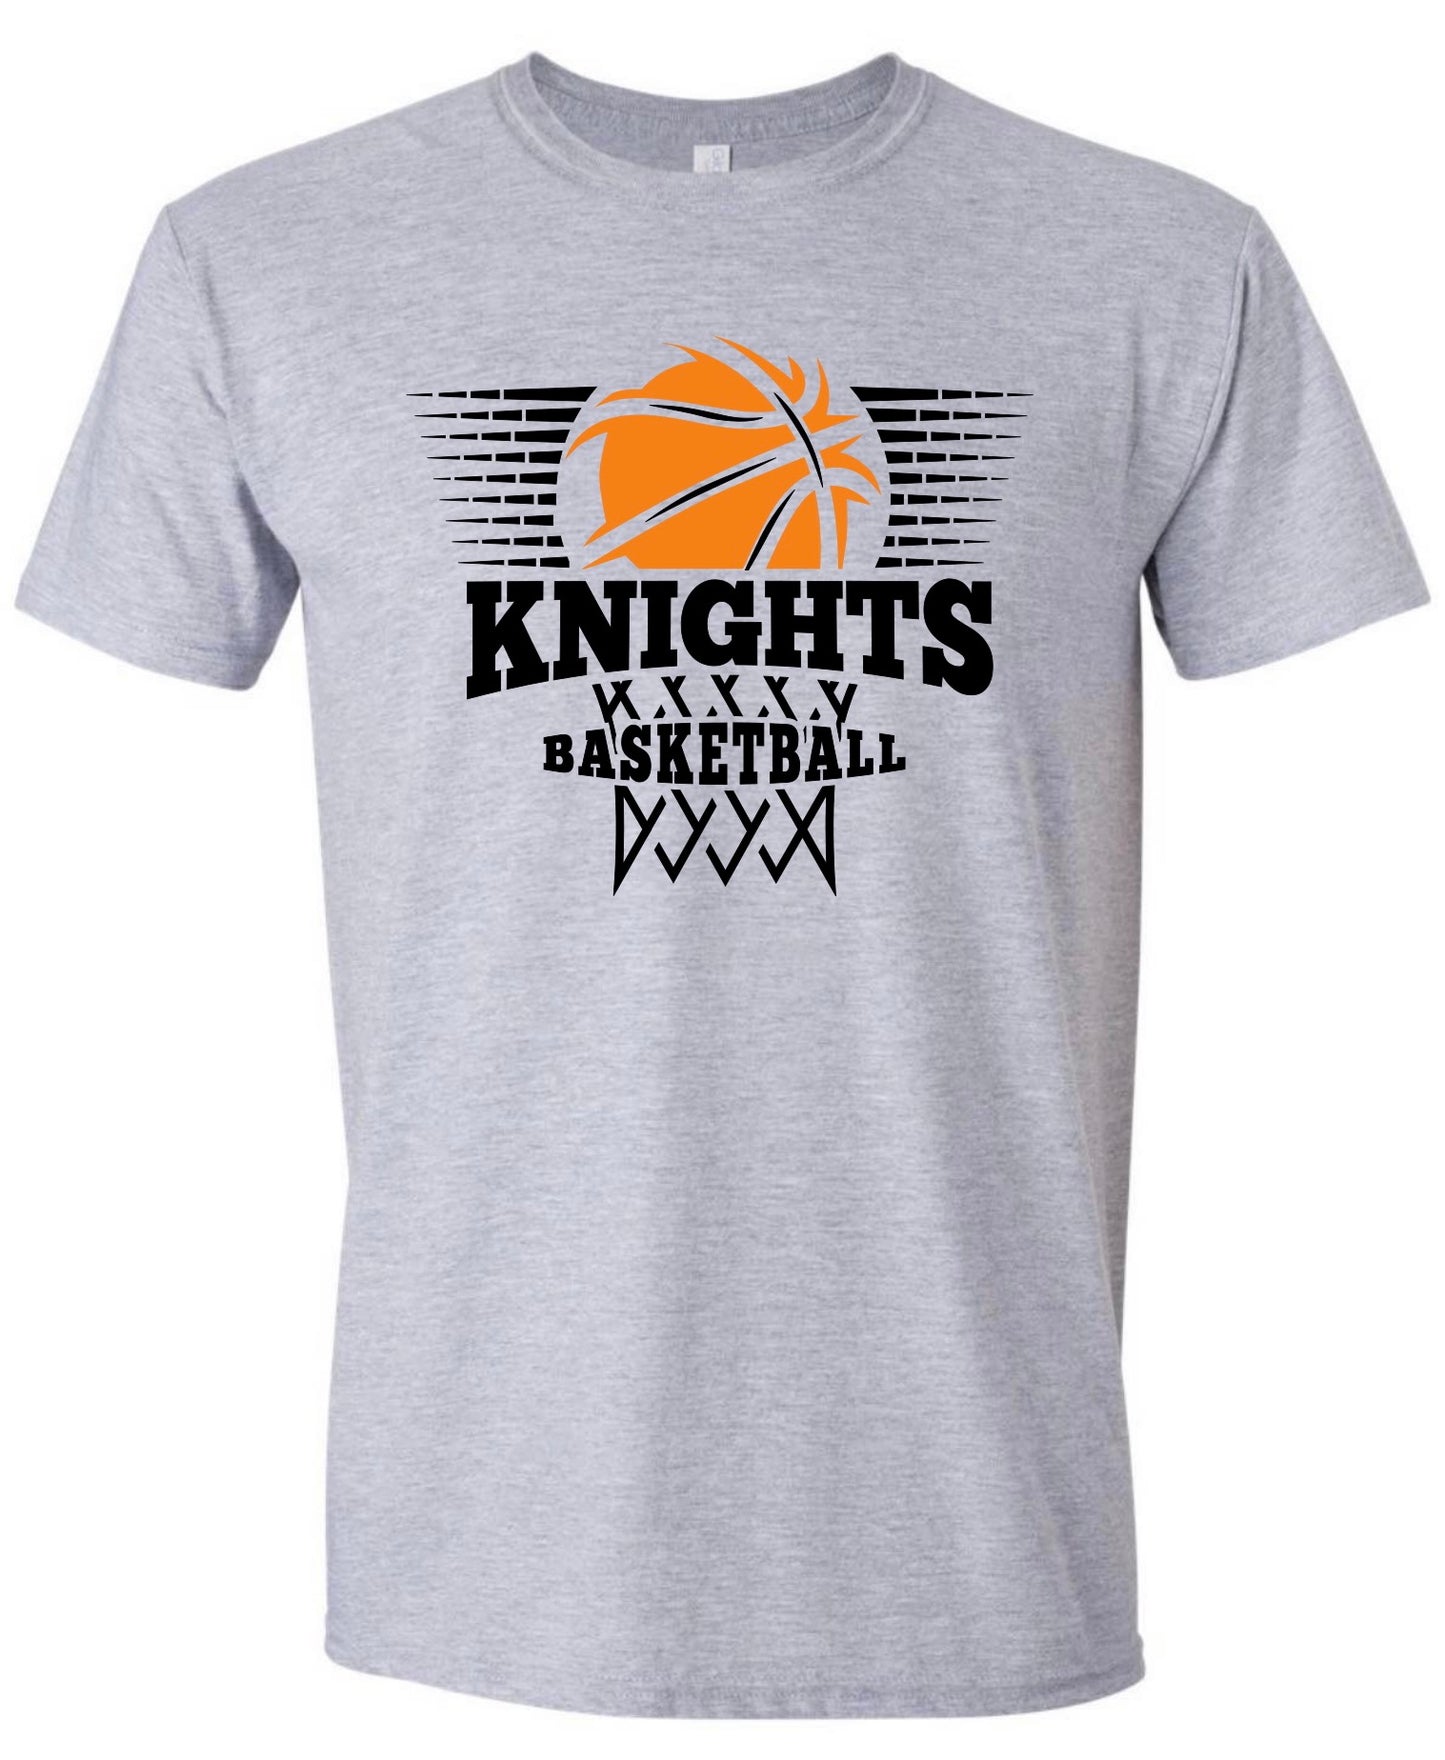 Knights Basketball Net Tshirt